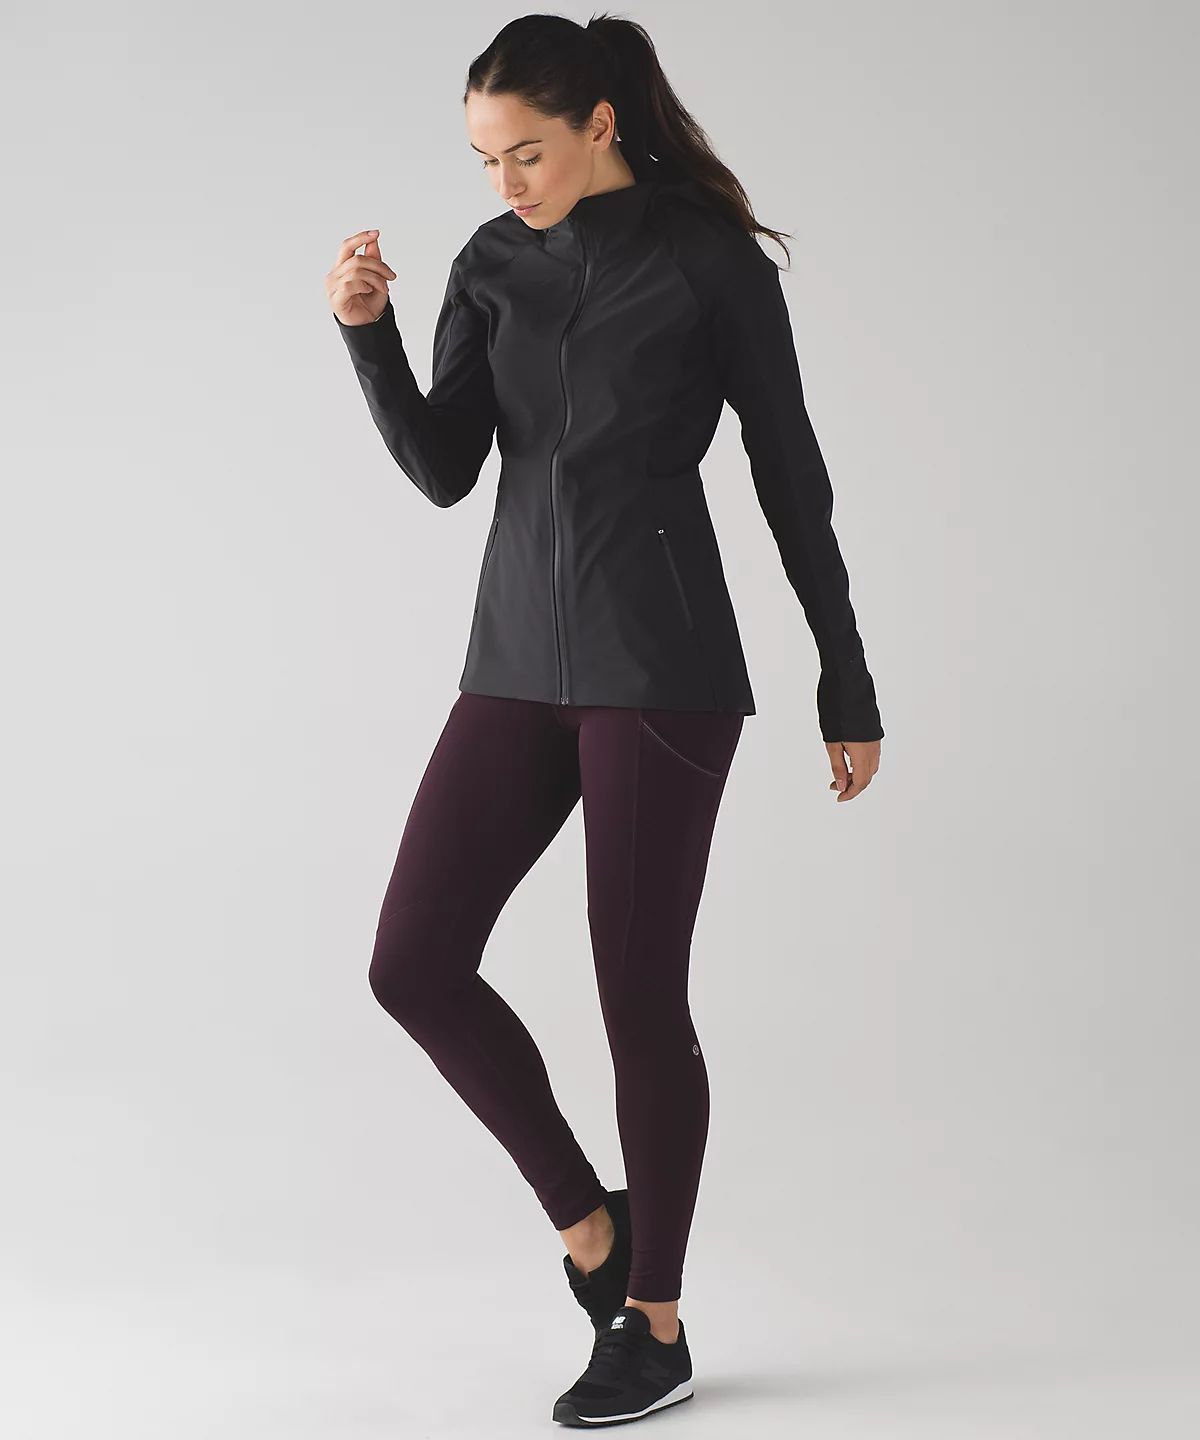 sleet sprinter jacket | Lululemon (US)